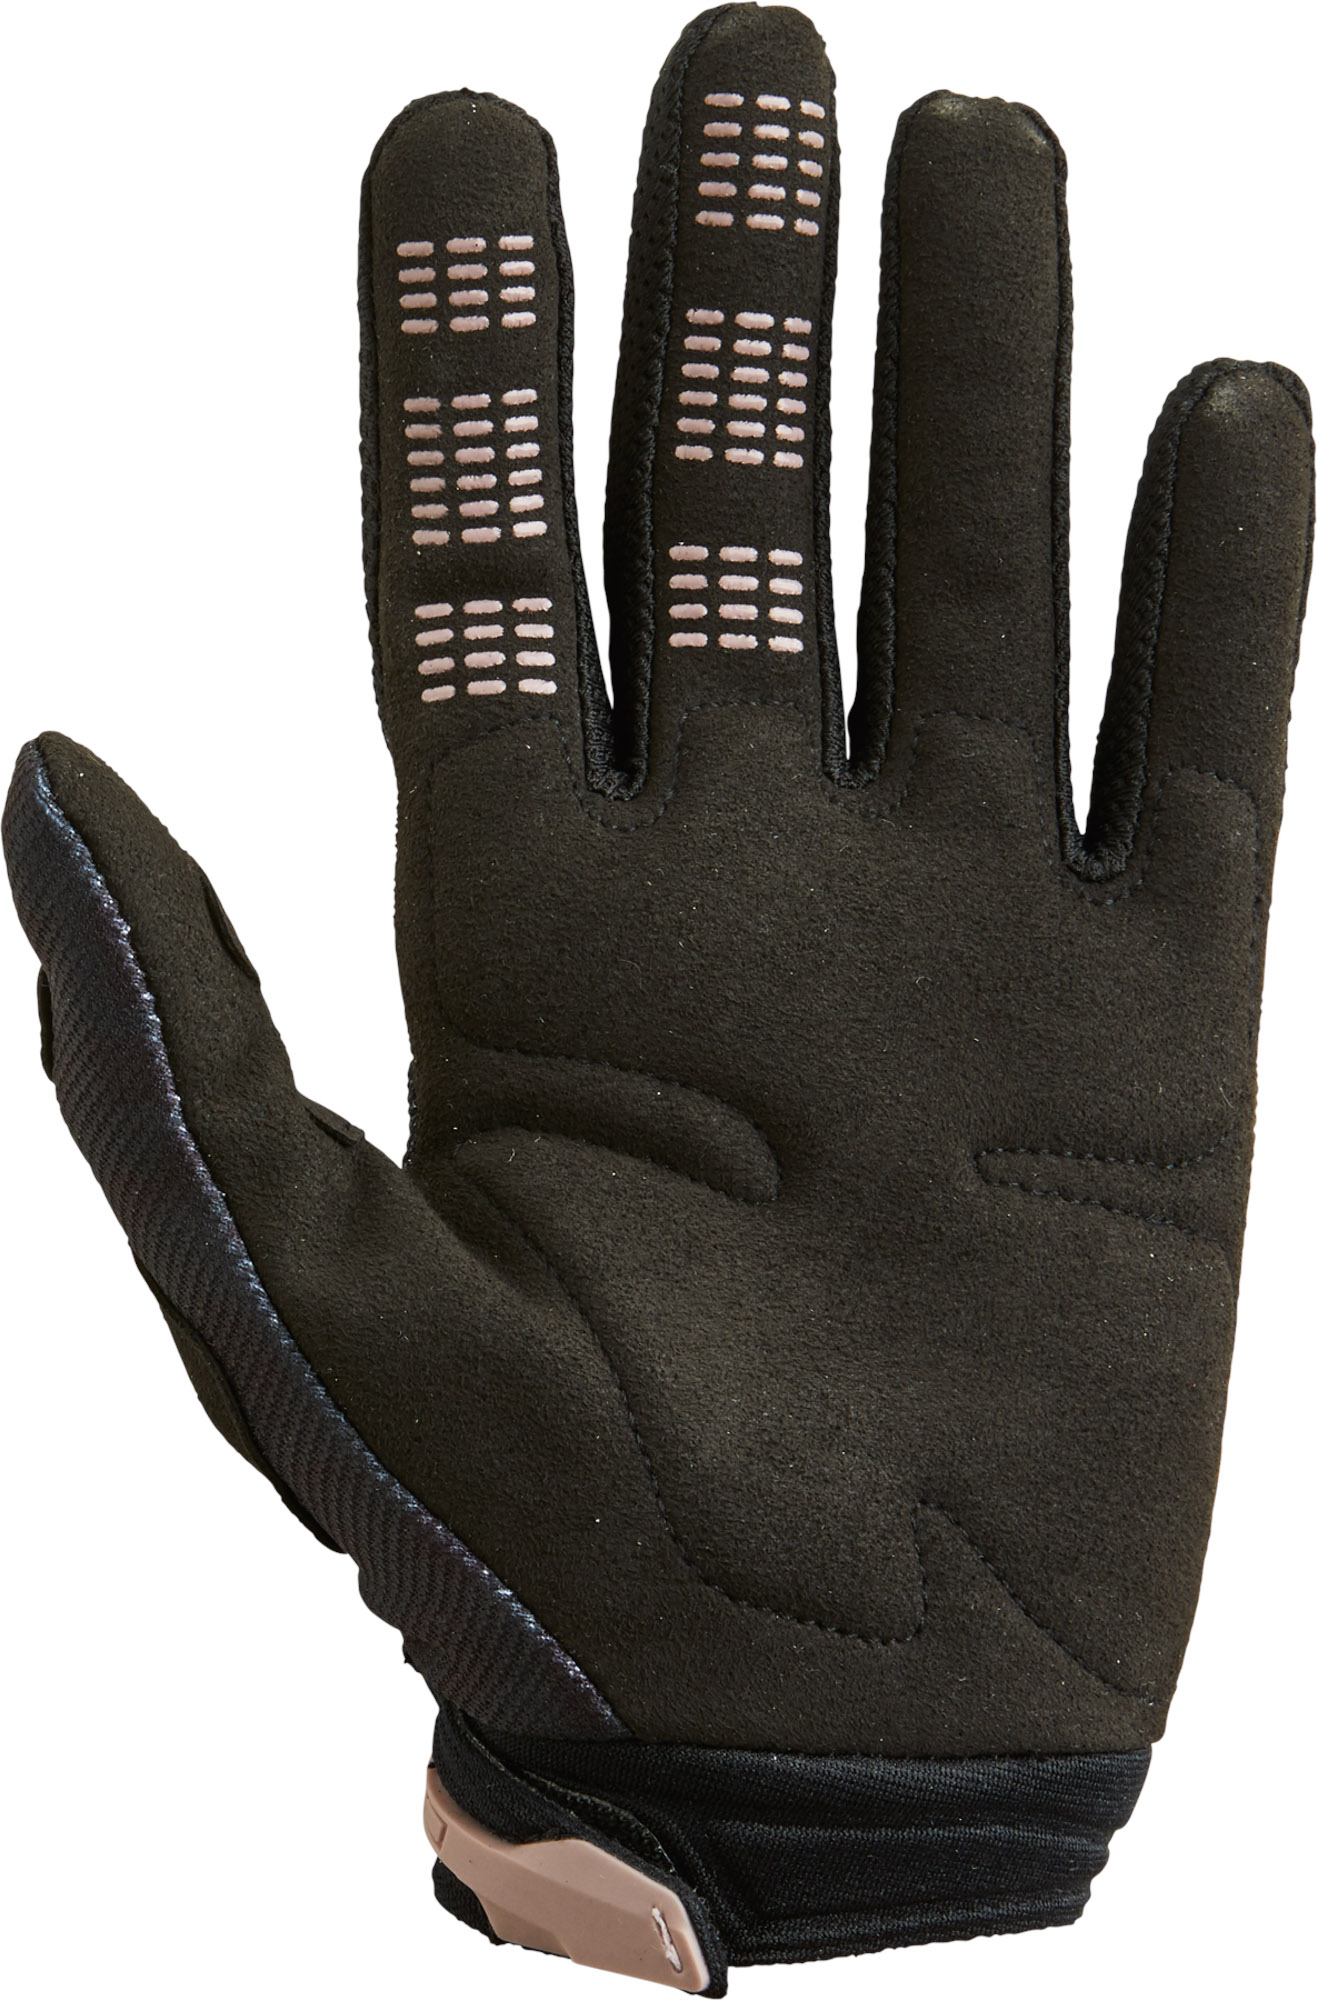 Obrázek produktu FOX Wmns 180 Skew Glove - XL, Black MX22 28178-001-XL